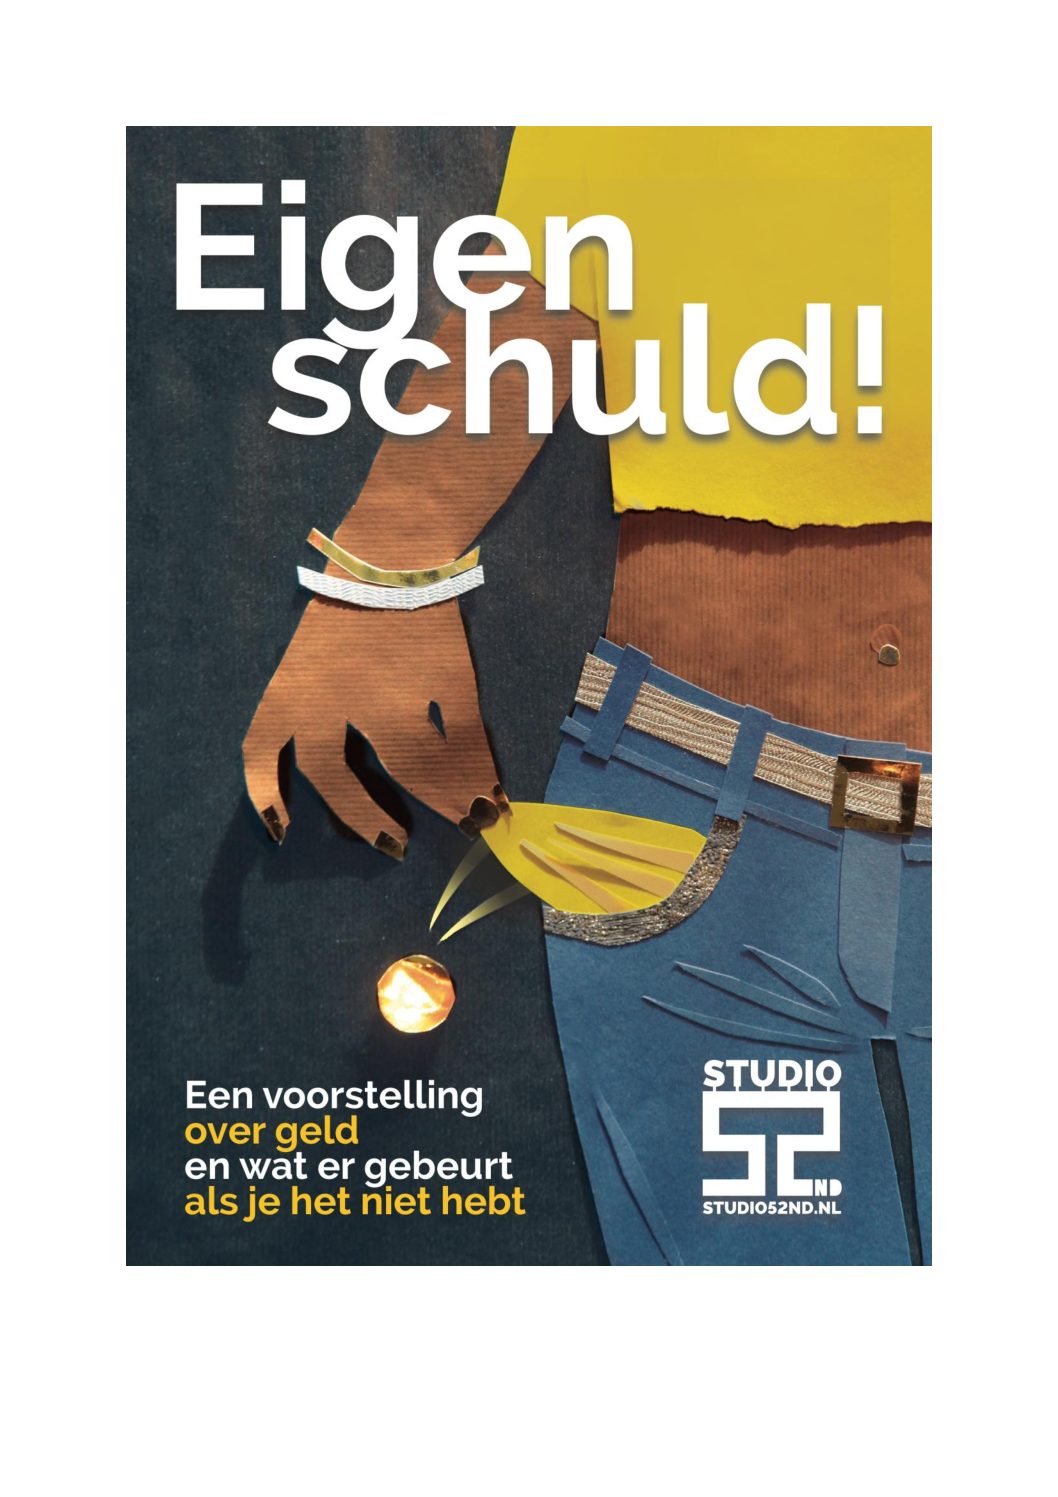 Financiële ondersteuning aan culturele organisaties in Amsterdam die sociaal-culturele projecten organiseren voor Amsterdamse jongeren - Project 10613Studio 52nd | Eigen schuld!